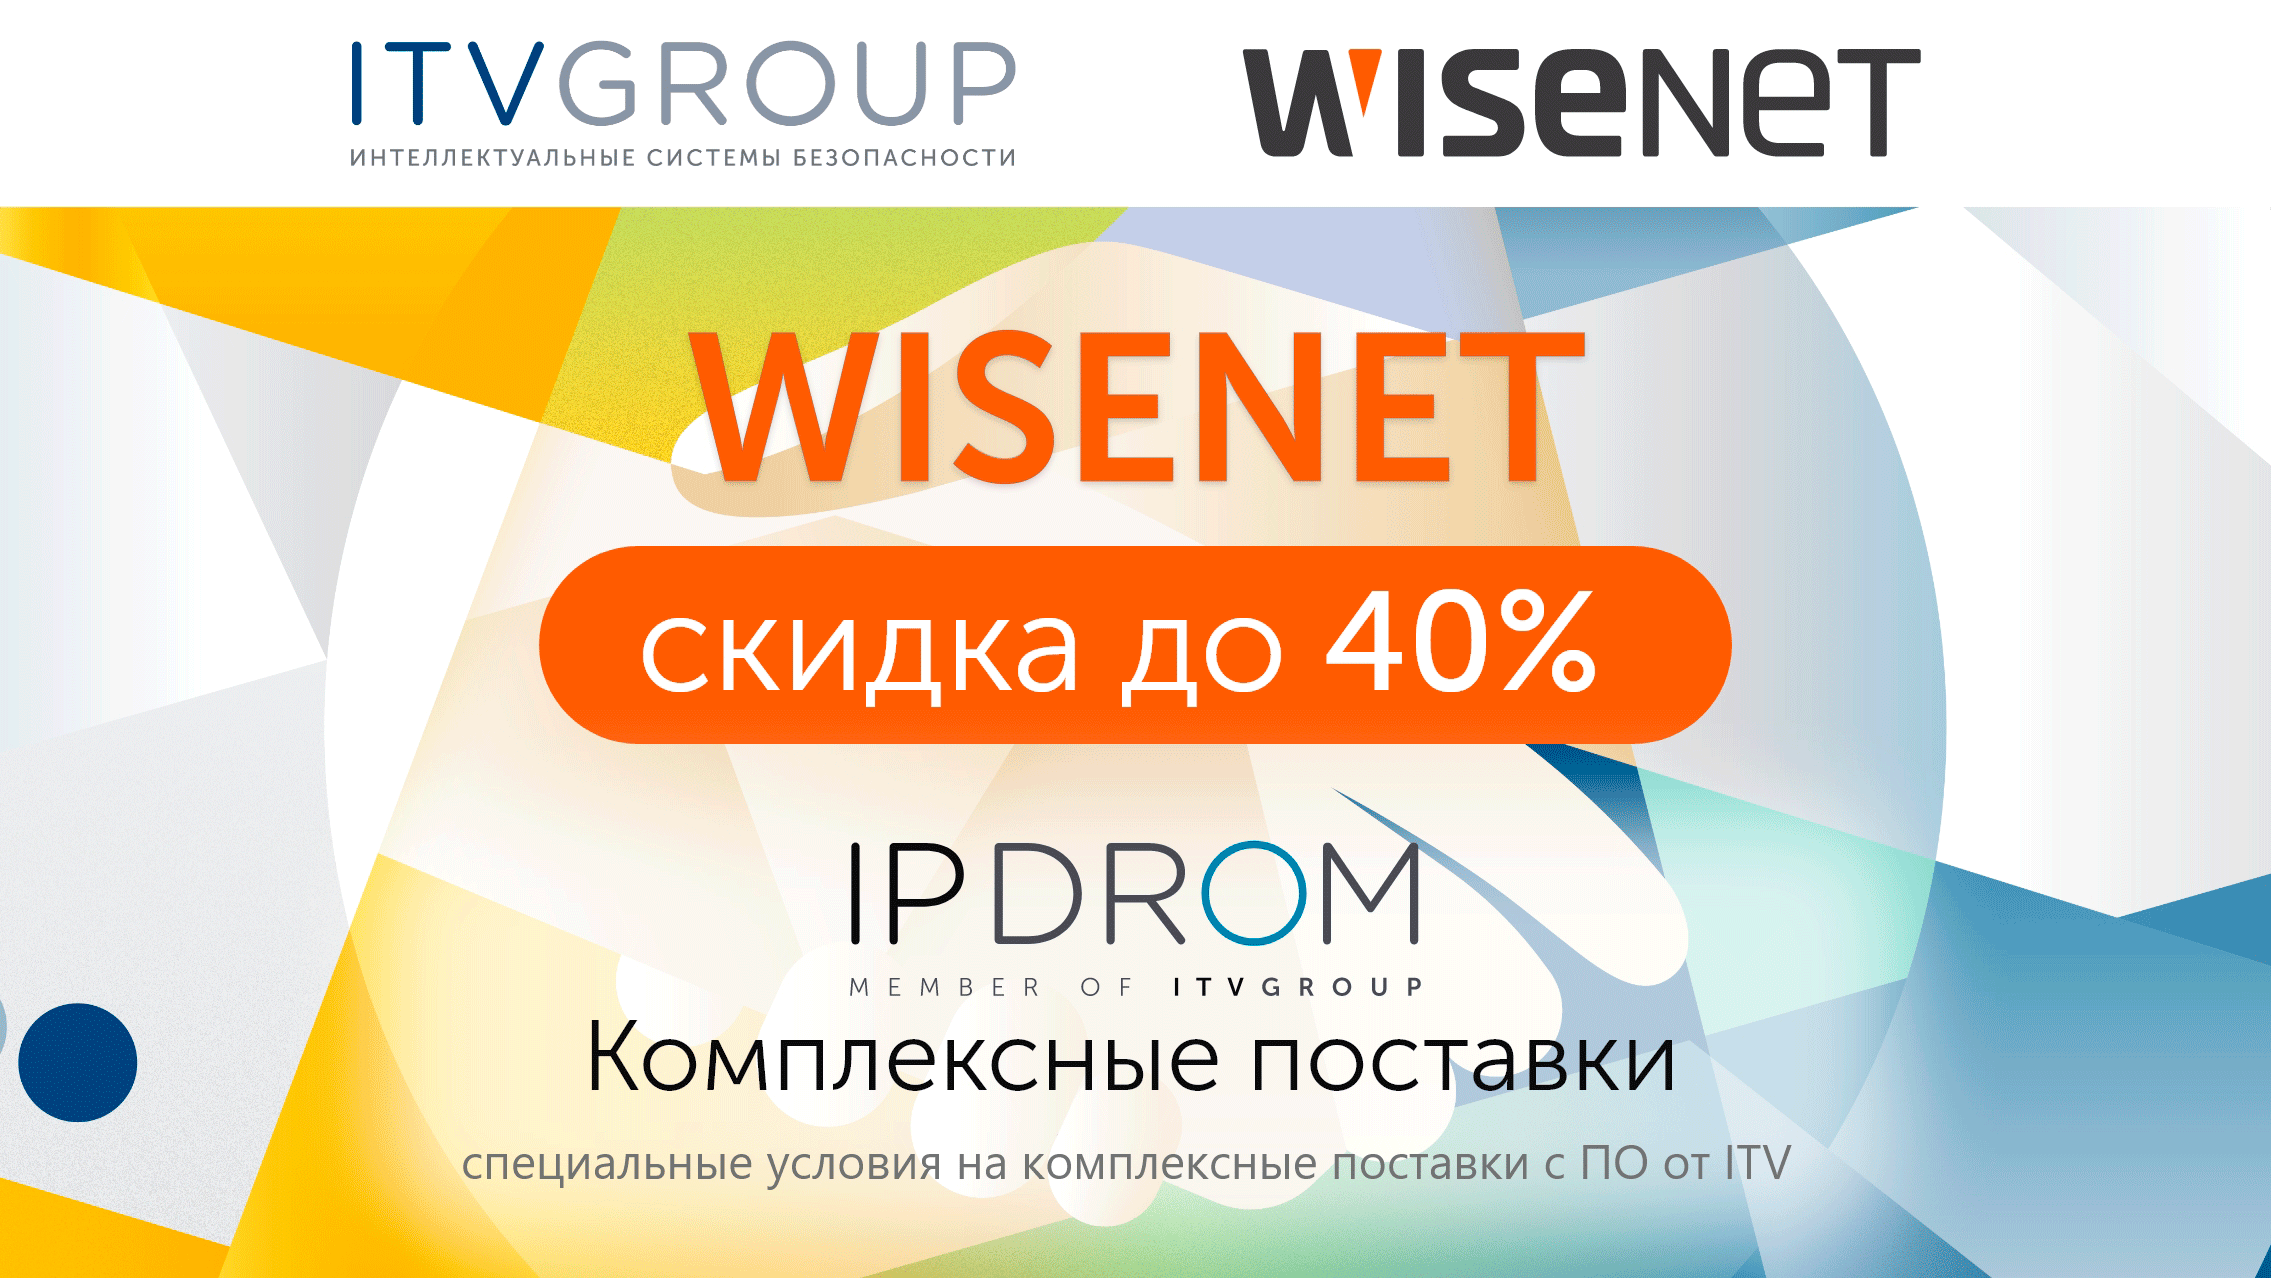  IPDROM - WISENET - ITV GROUP проводят совместную акцию!